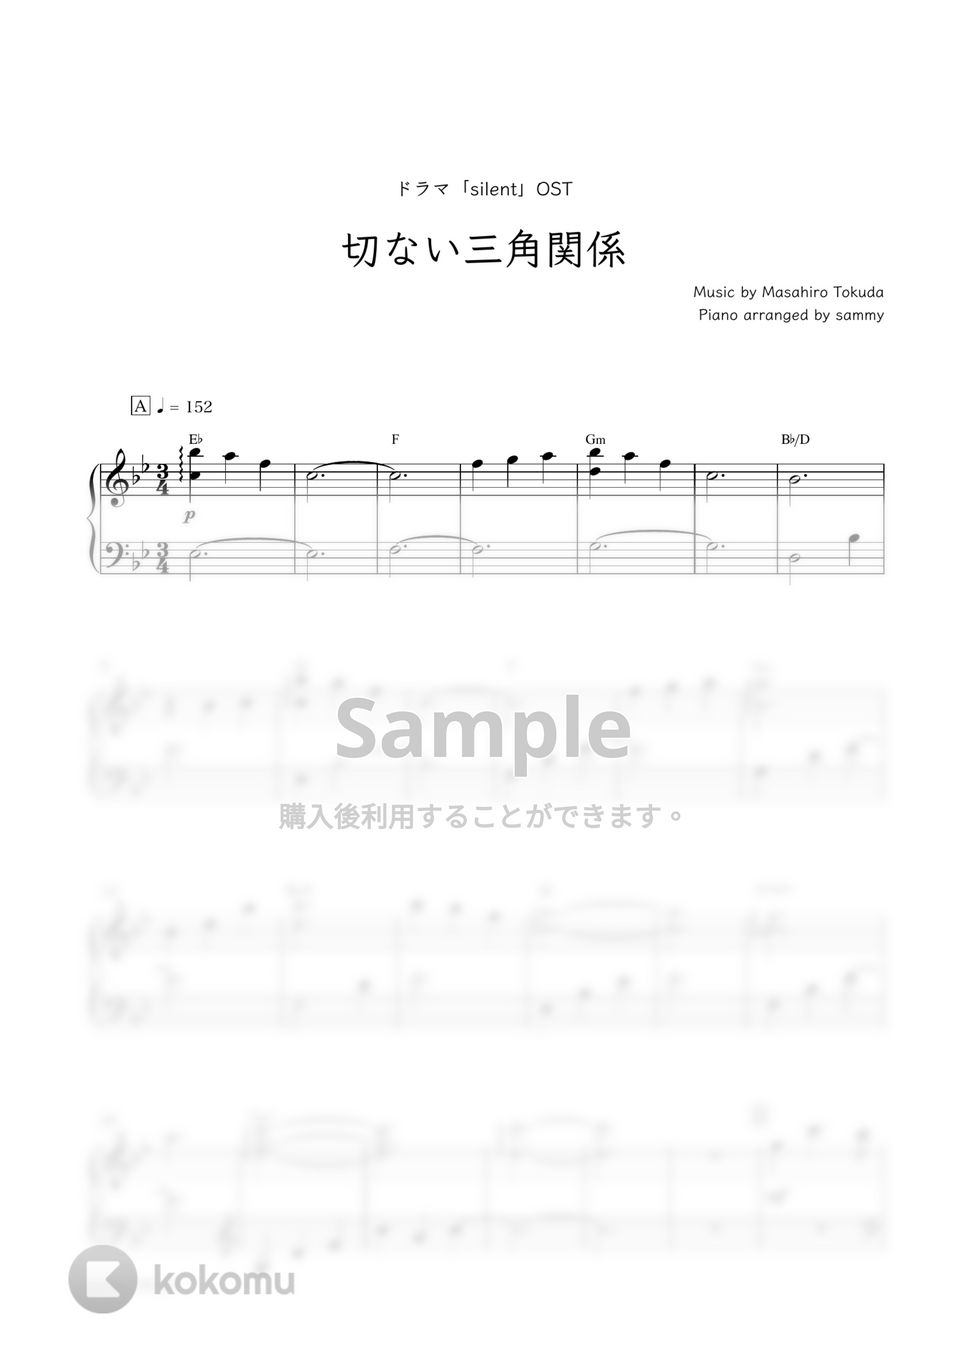 ドラマ『silent』OST - 切ない三角関係 by sammy